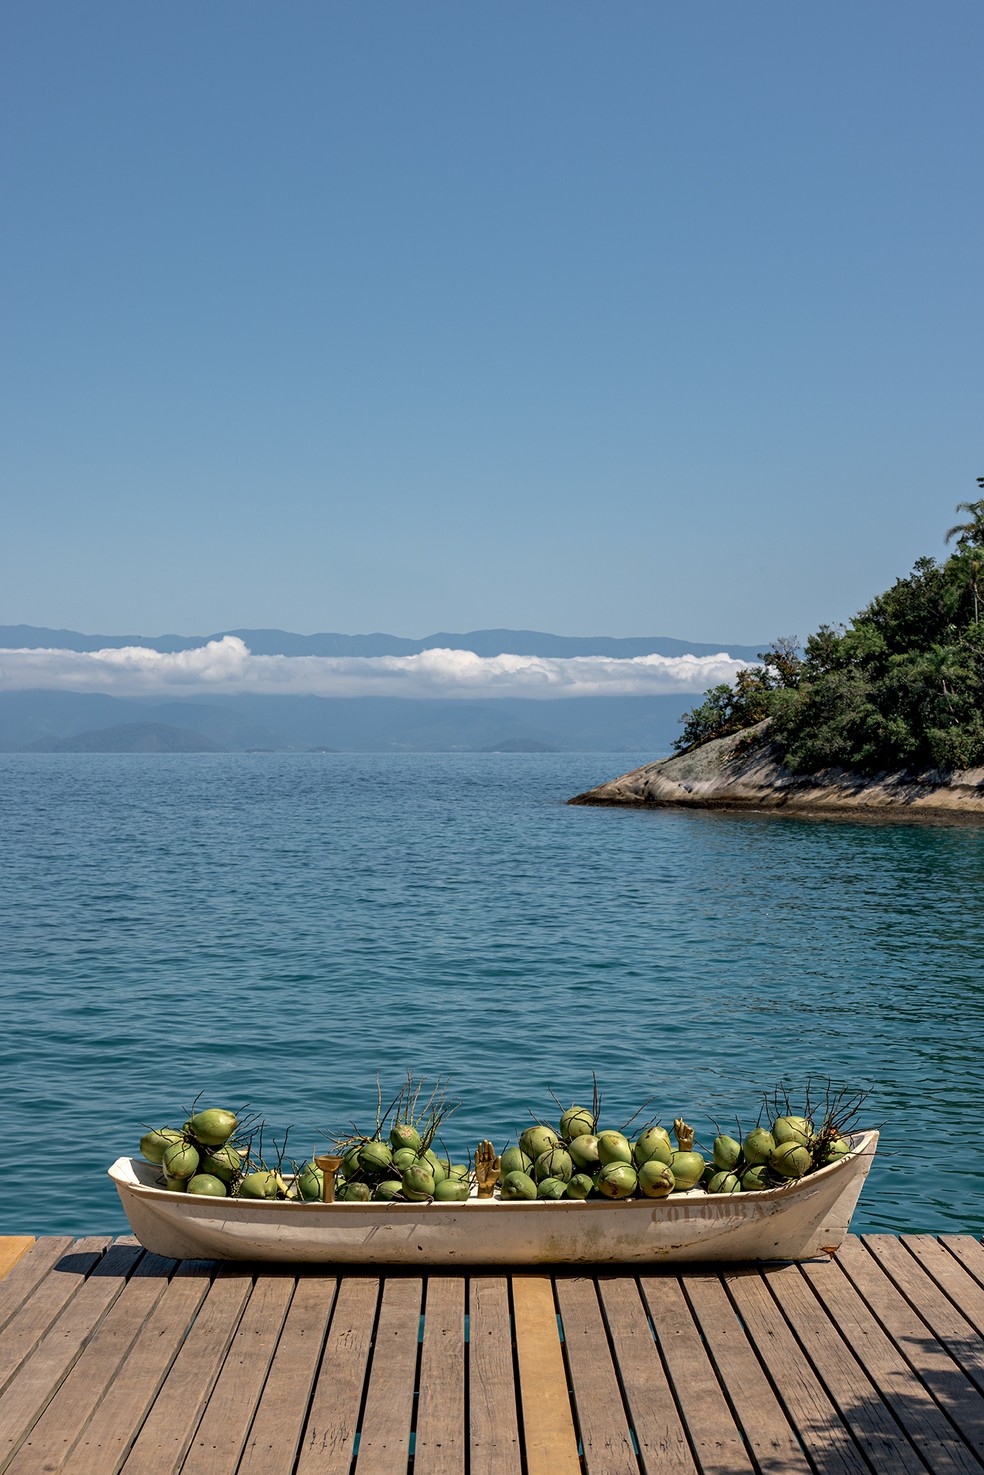 A paisagem do paraíso: cocos verdes na canoa para se refrescar nos dias de sol — Foto: Fran Parente